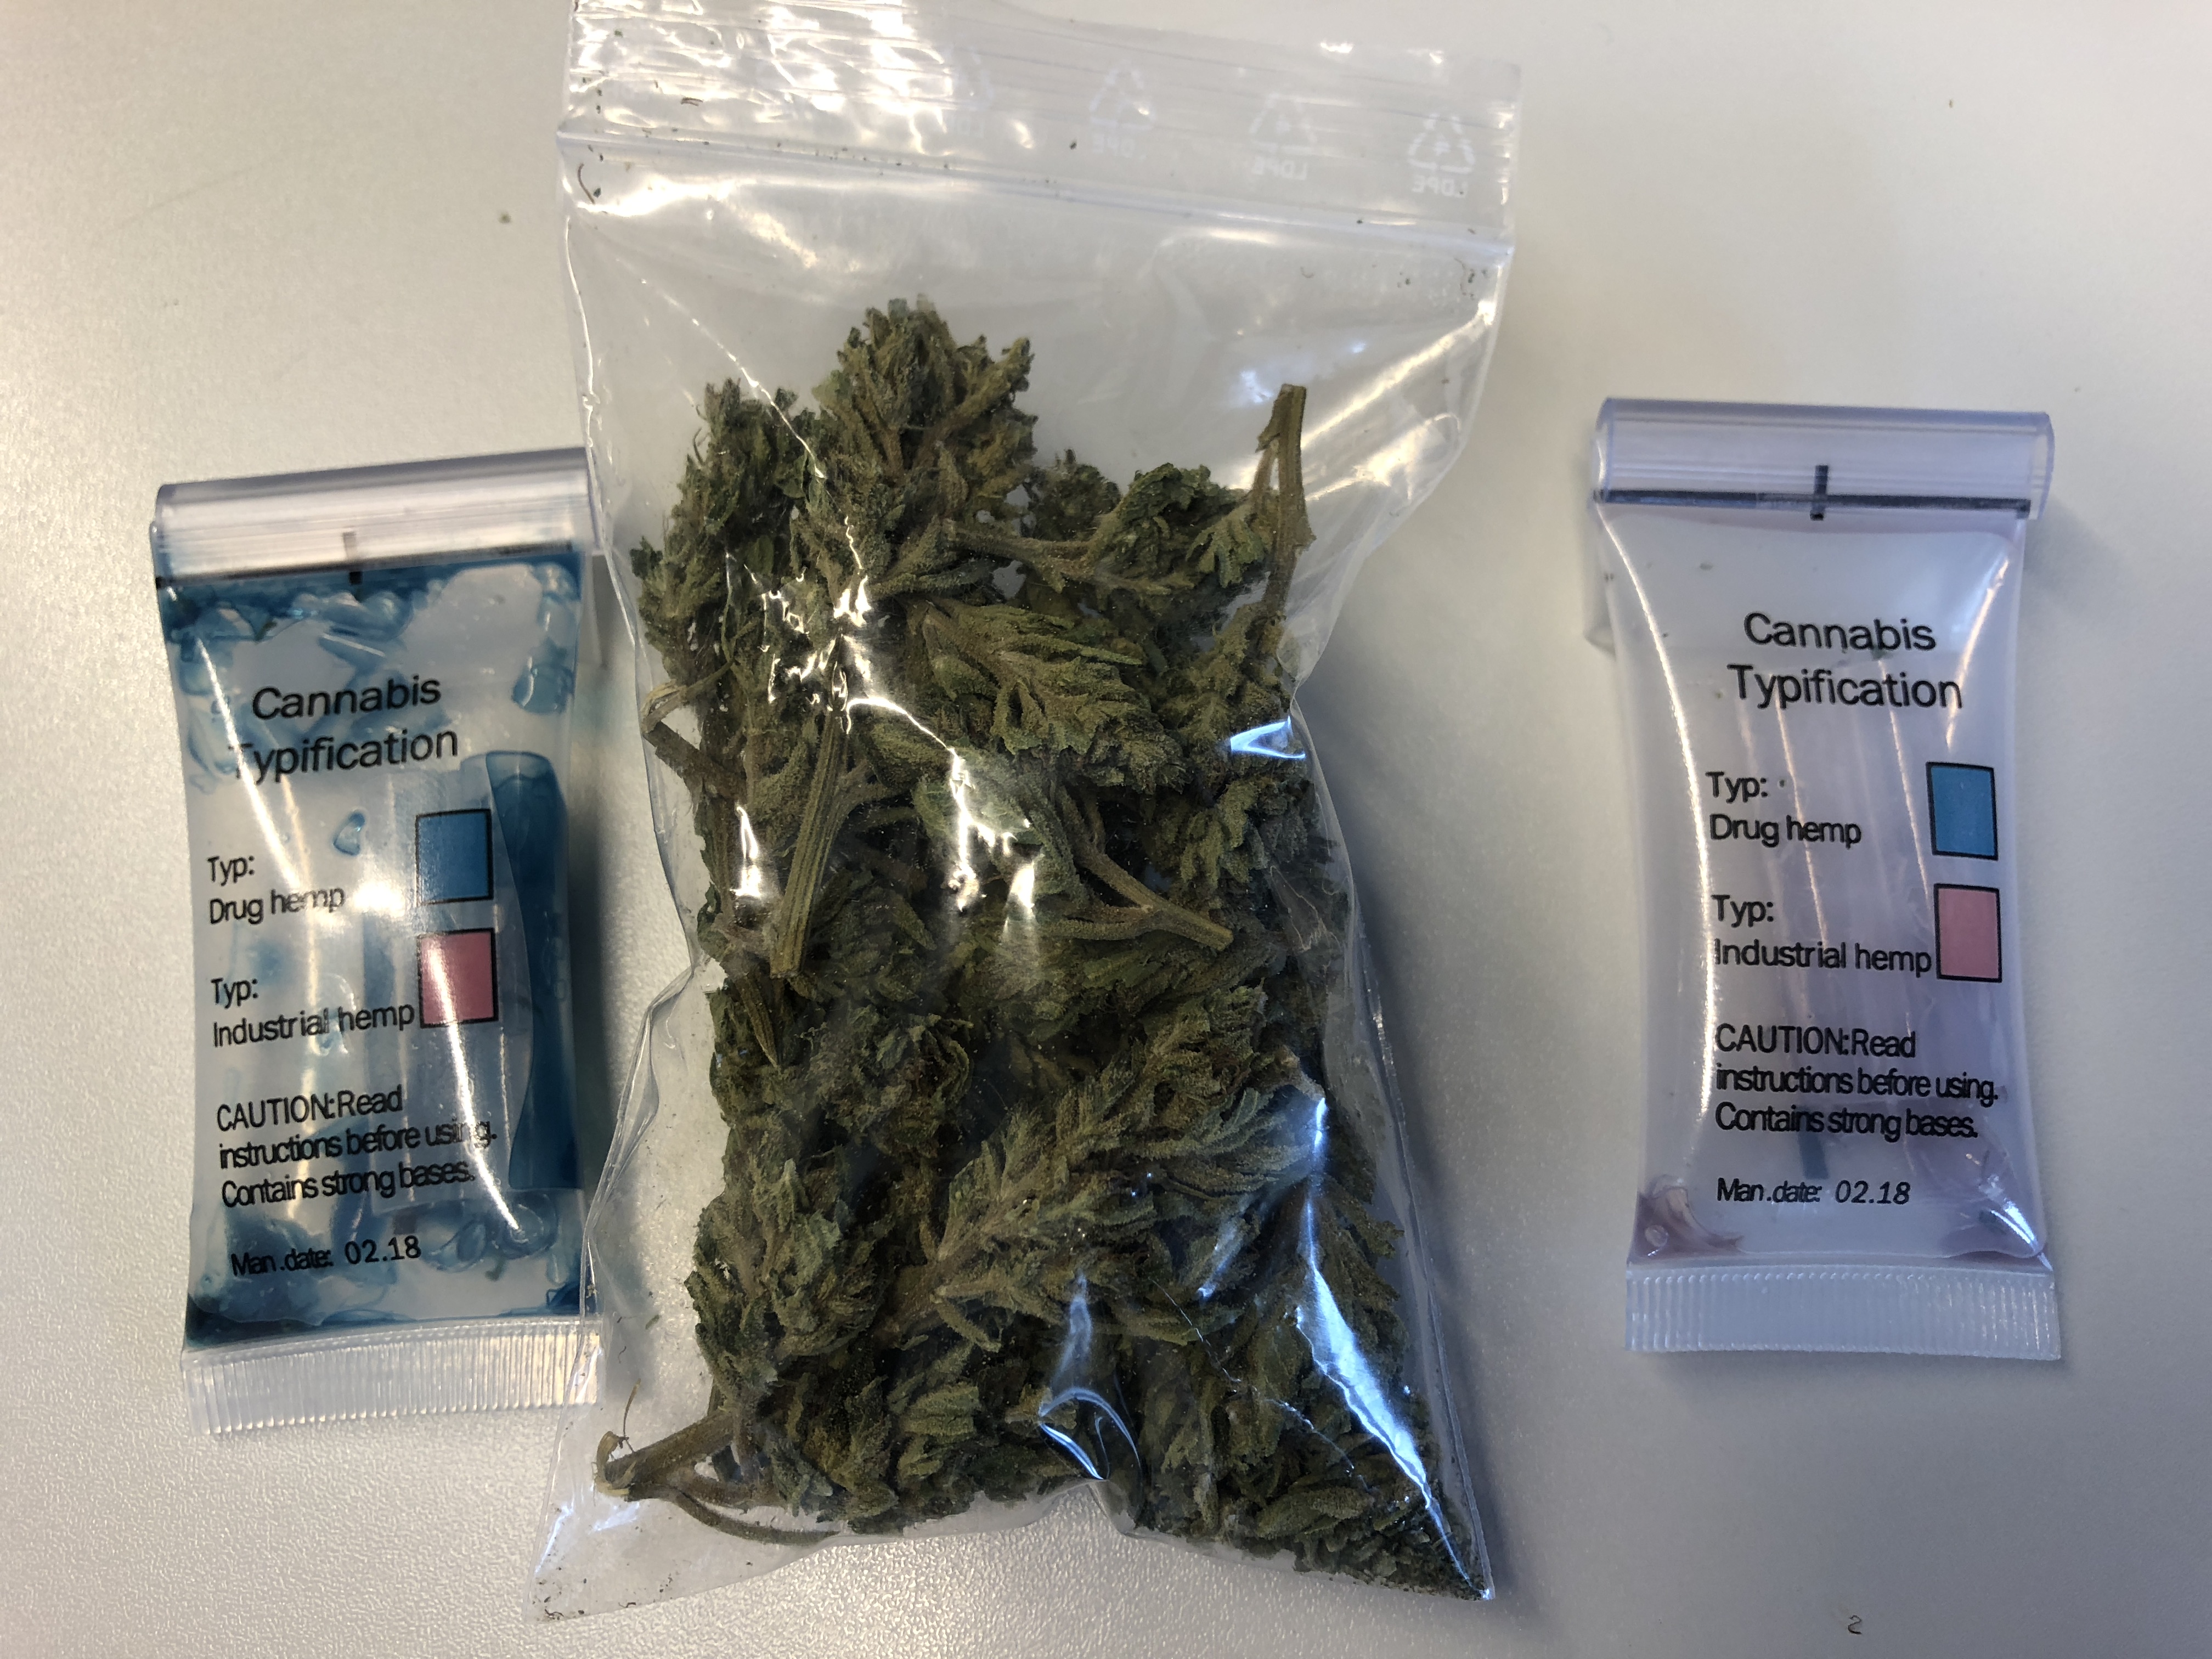 Cannabis illégal: démonstration du kit de détection de la police valaisanne